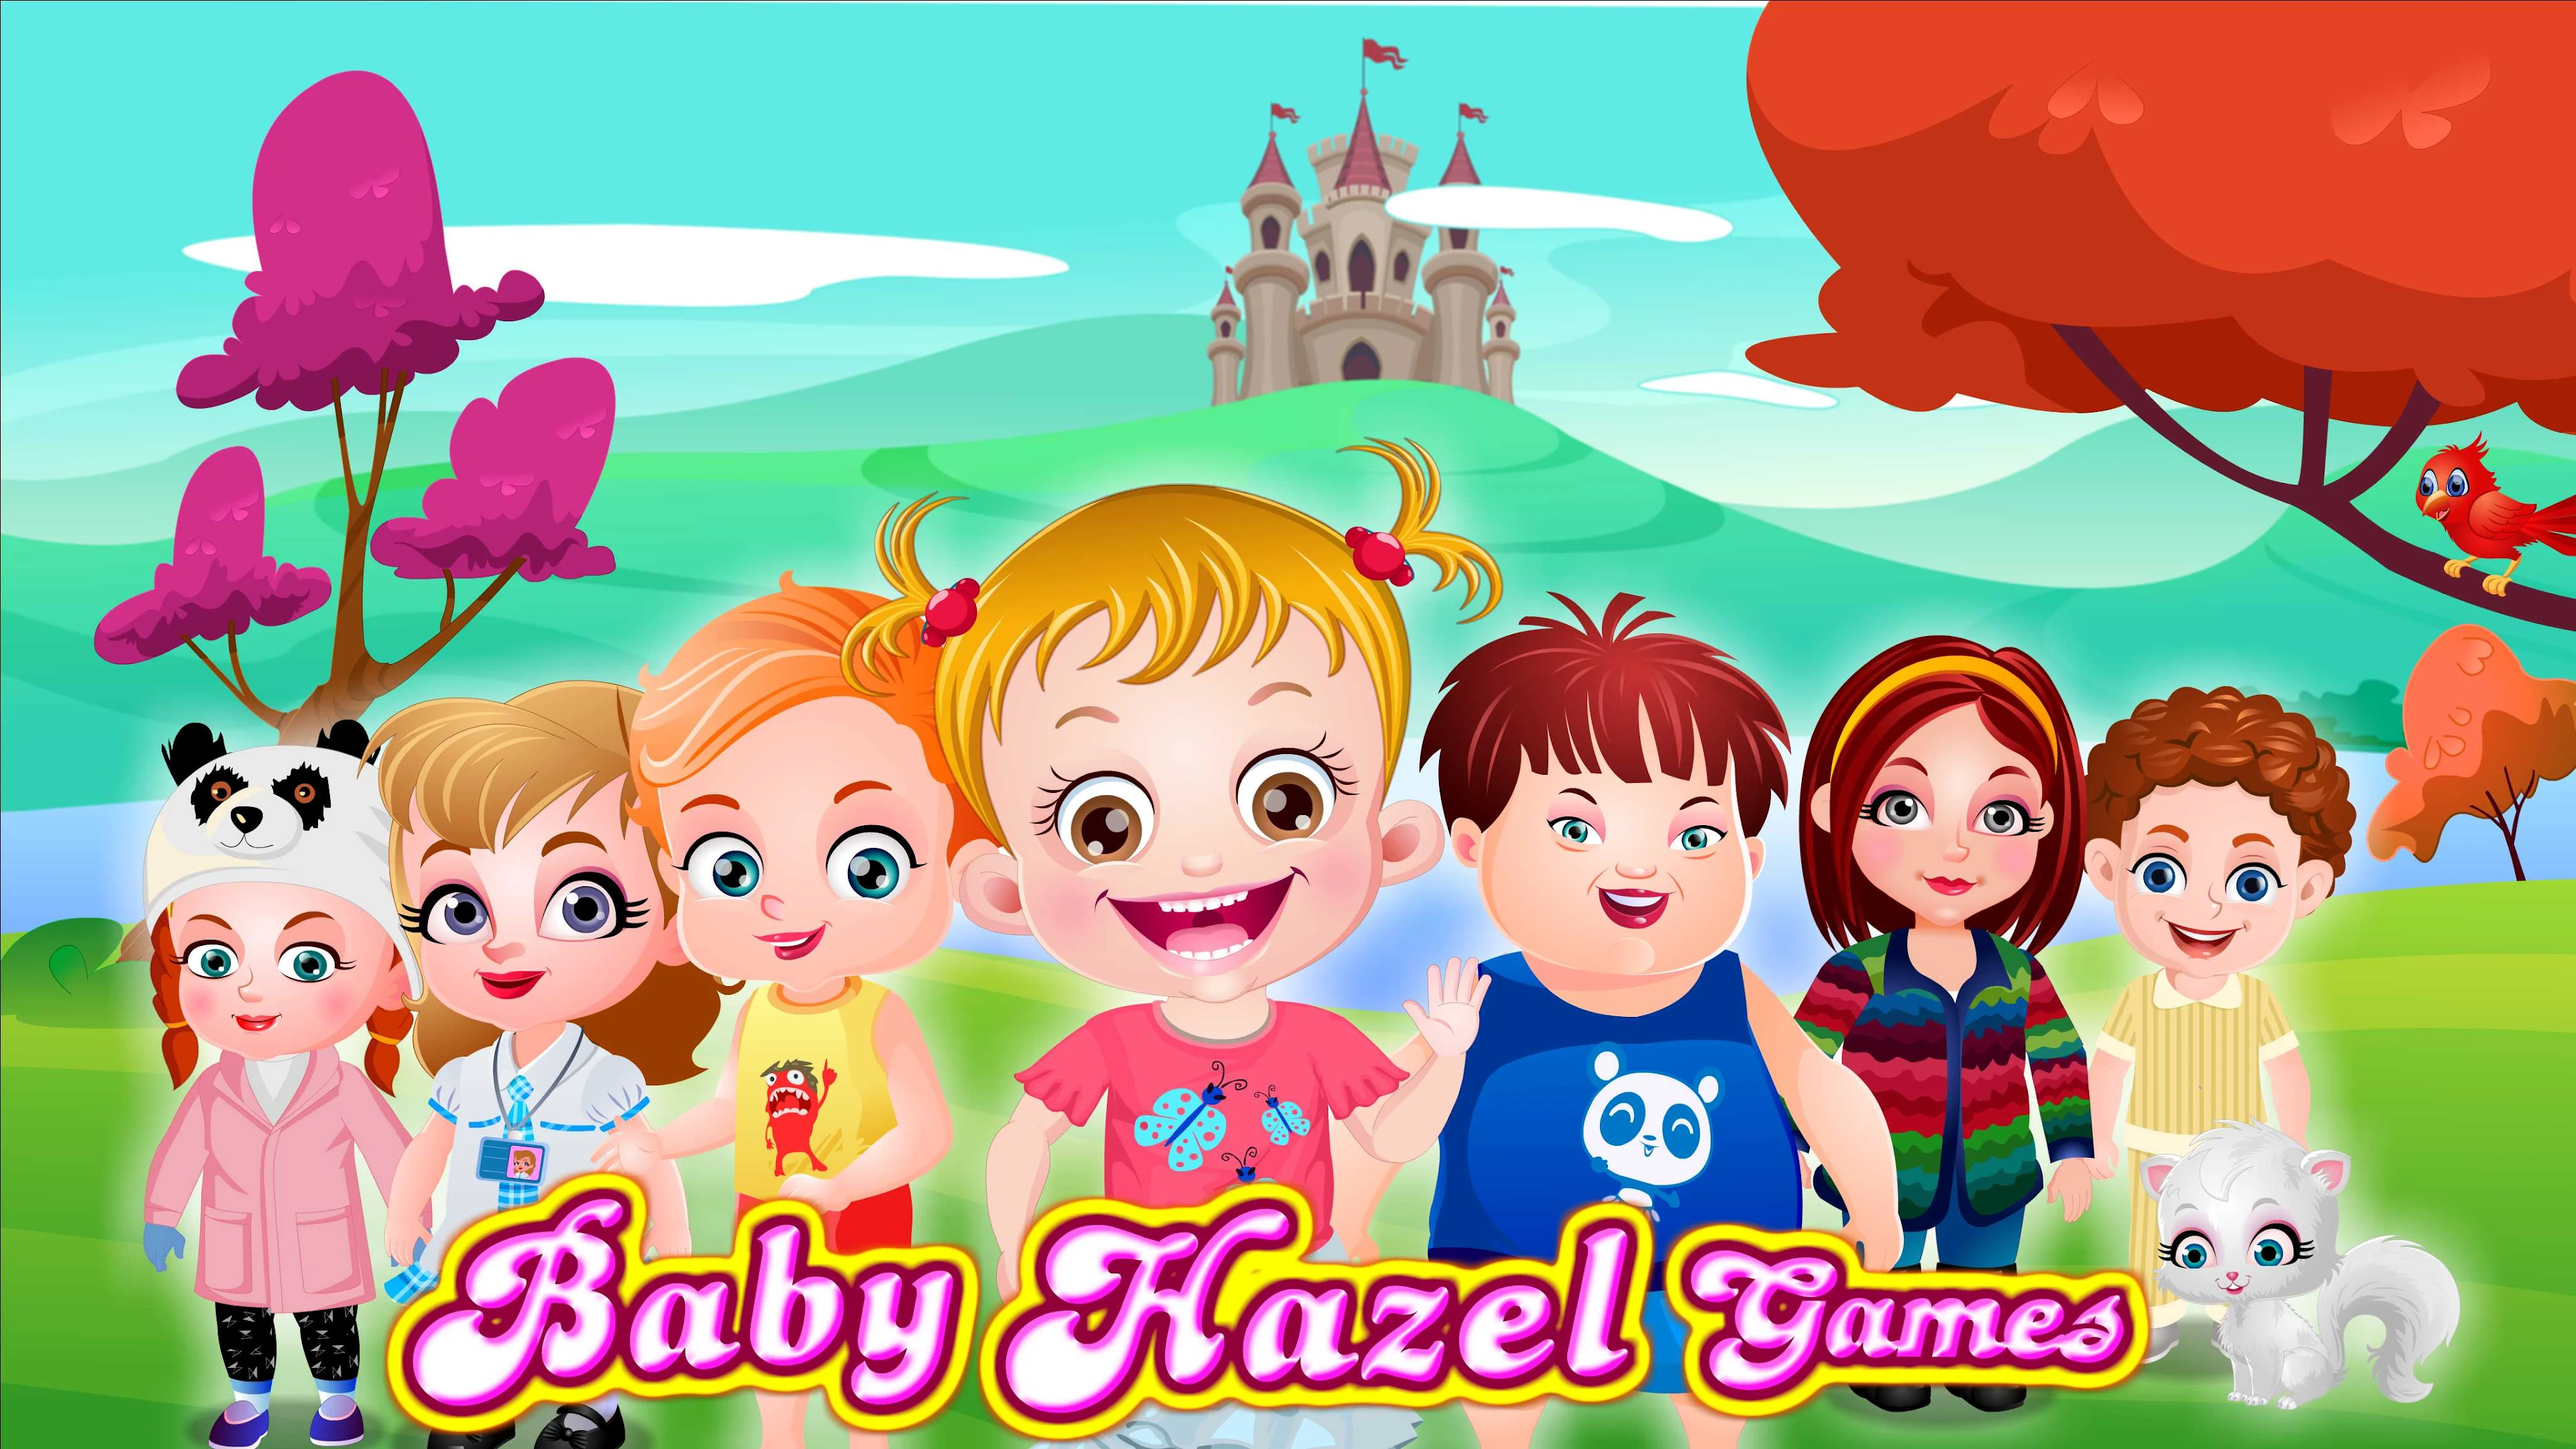 Jogos da Baby Hazel no Jogos 360